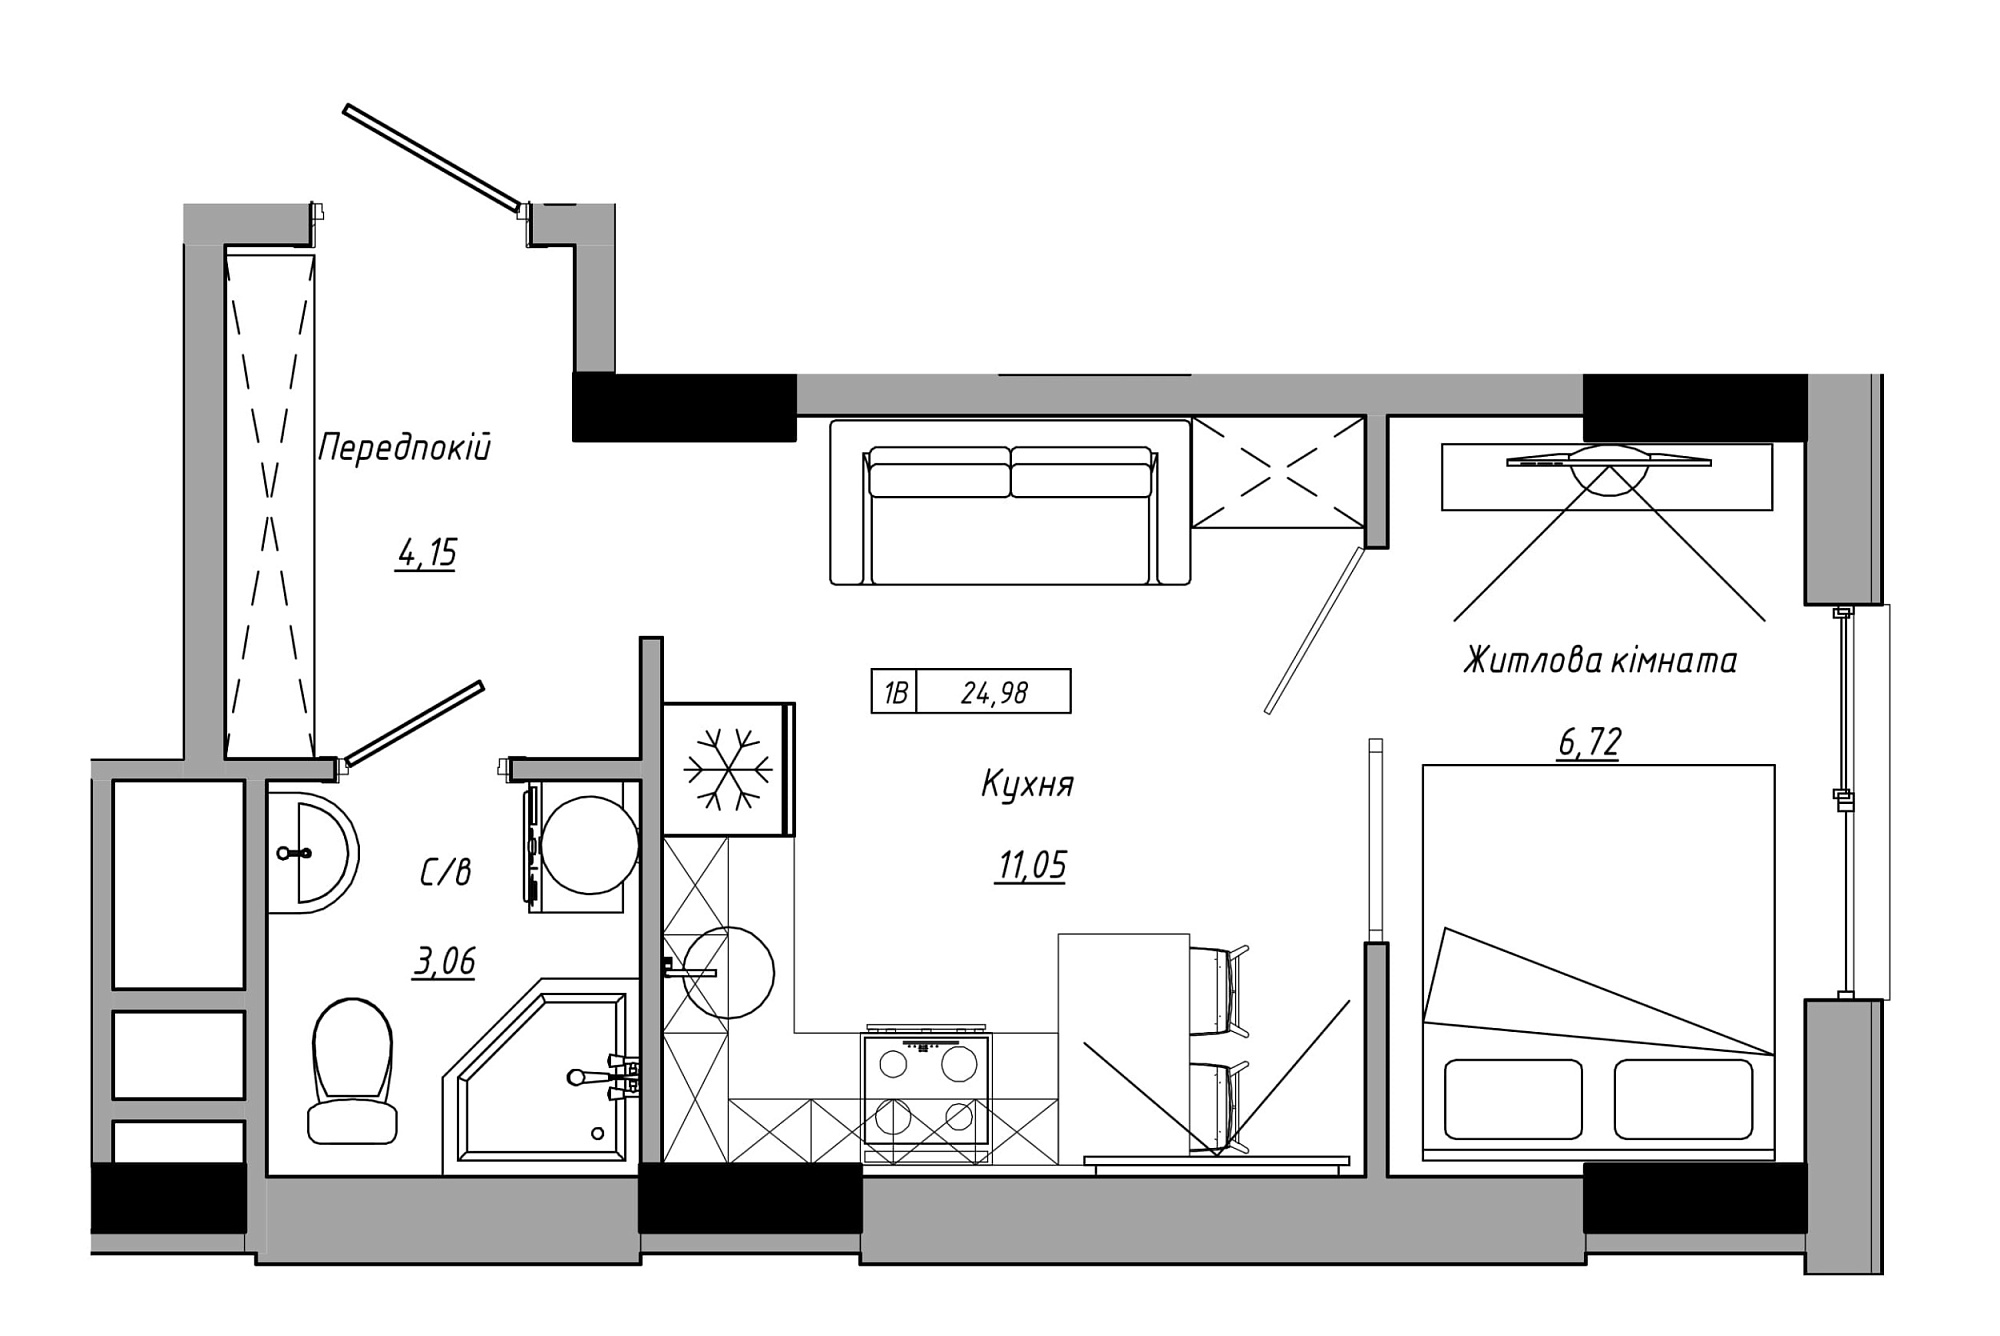 Планування 1-к квартира площею 24.98м2, AB-21-07/00004.